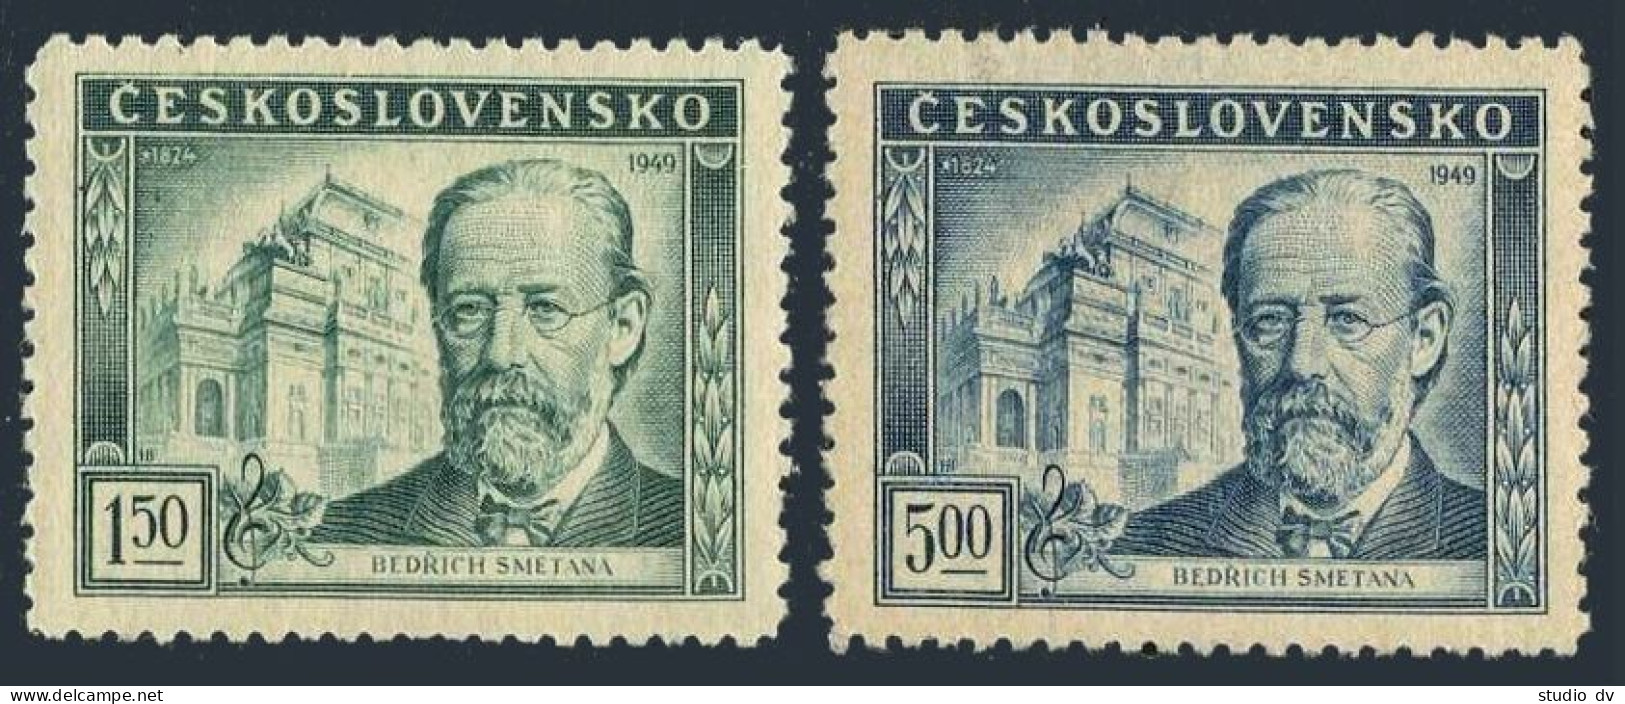 Czechoslovakia 386-387, MNH. Michel 578-579. Bedrich Smetana, Composer, 1949. - Ongebruikt